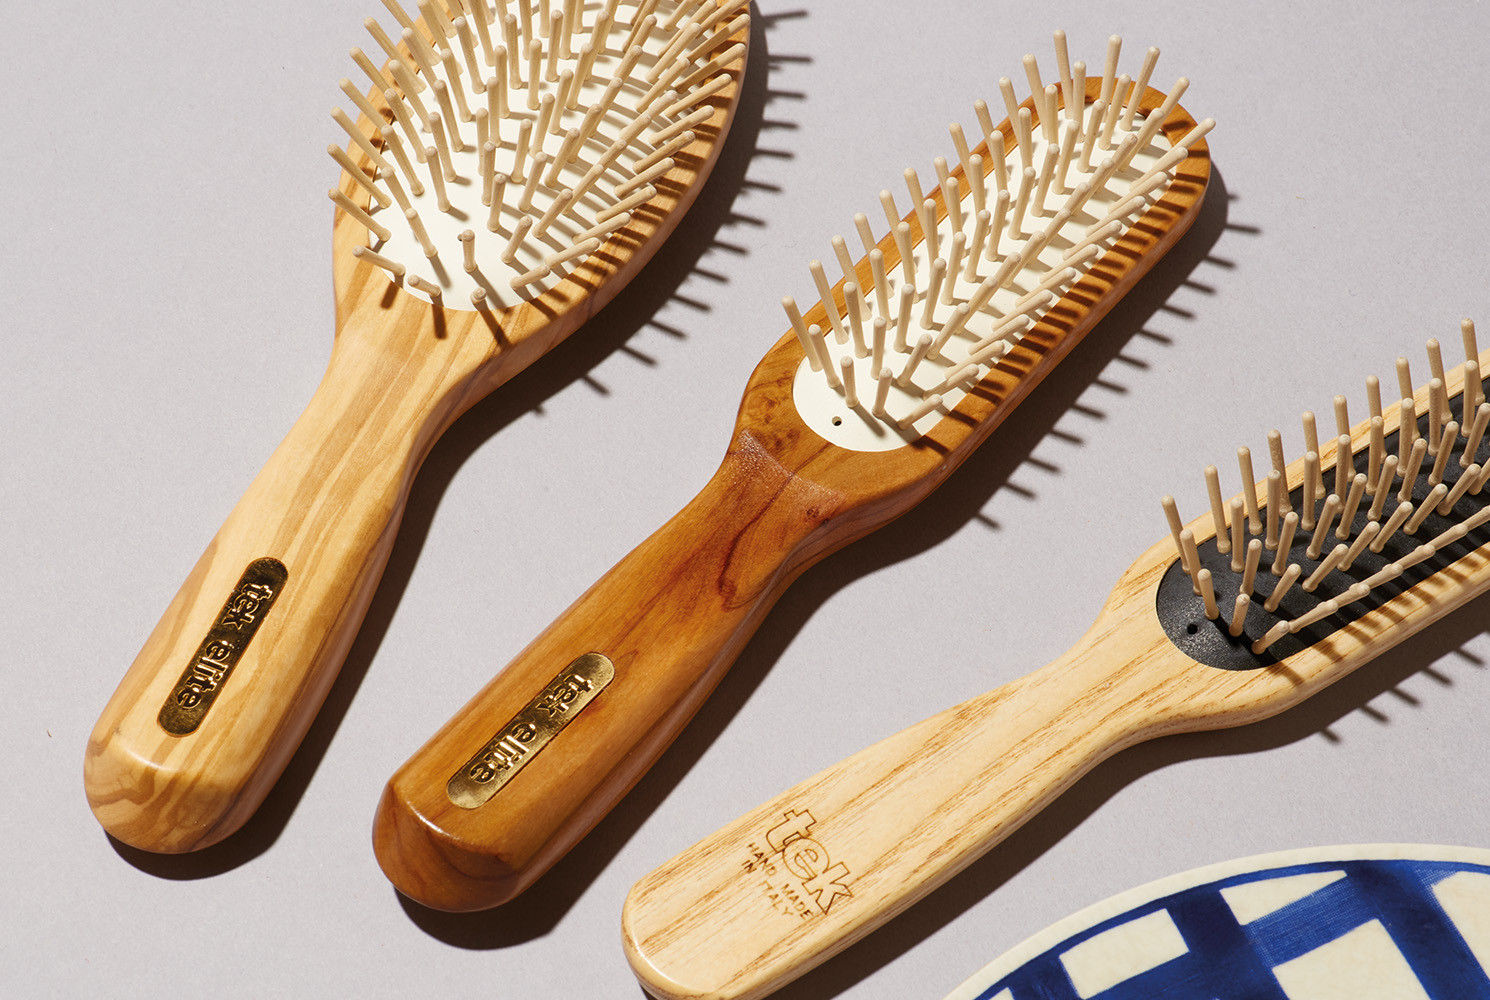 Les brosses à cheveux en bois, leurs bénéfices sur la santé du